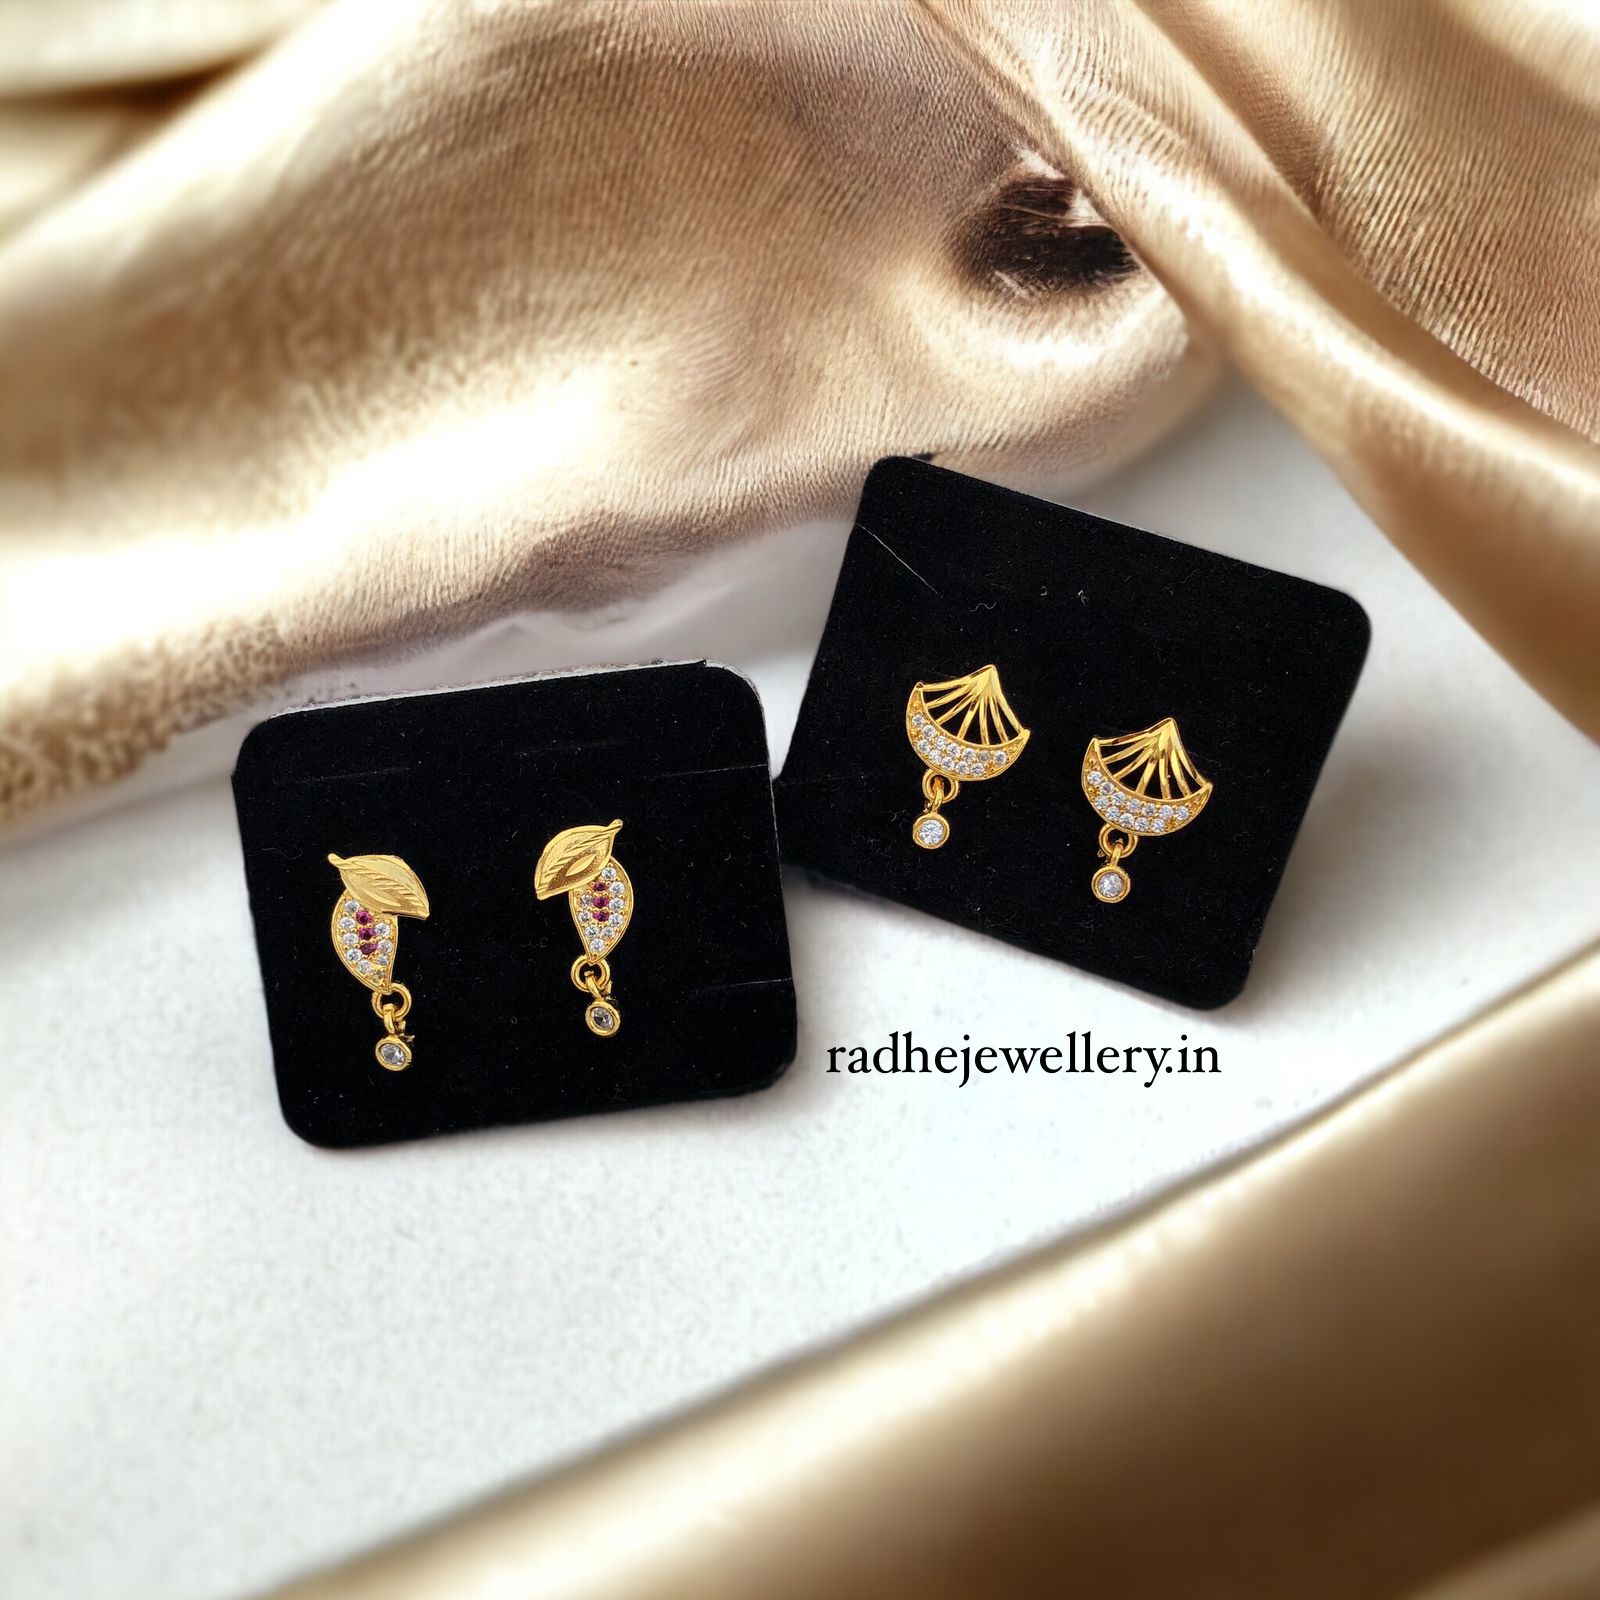 1 Gram gold Earrings New design - YouTube | Gold earrings models, Simple gold  earrings, Gold earrings designs